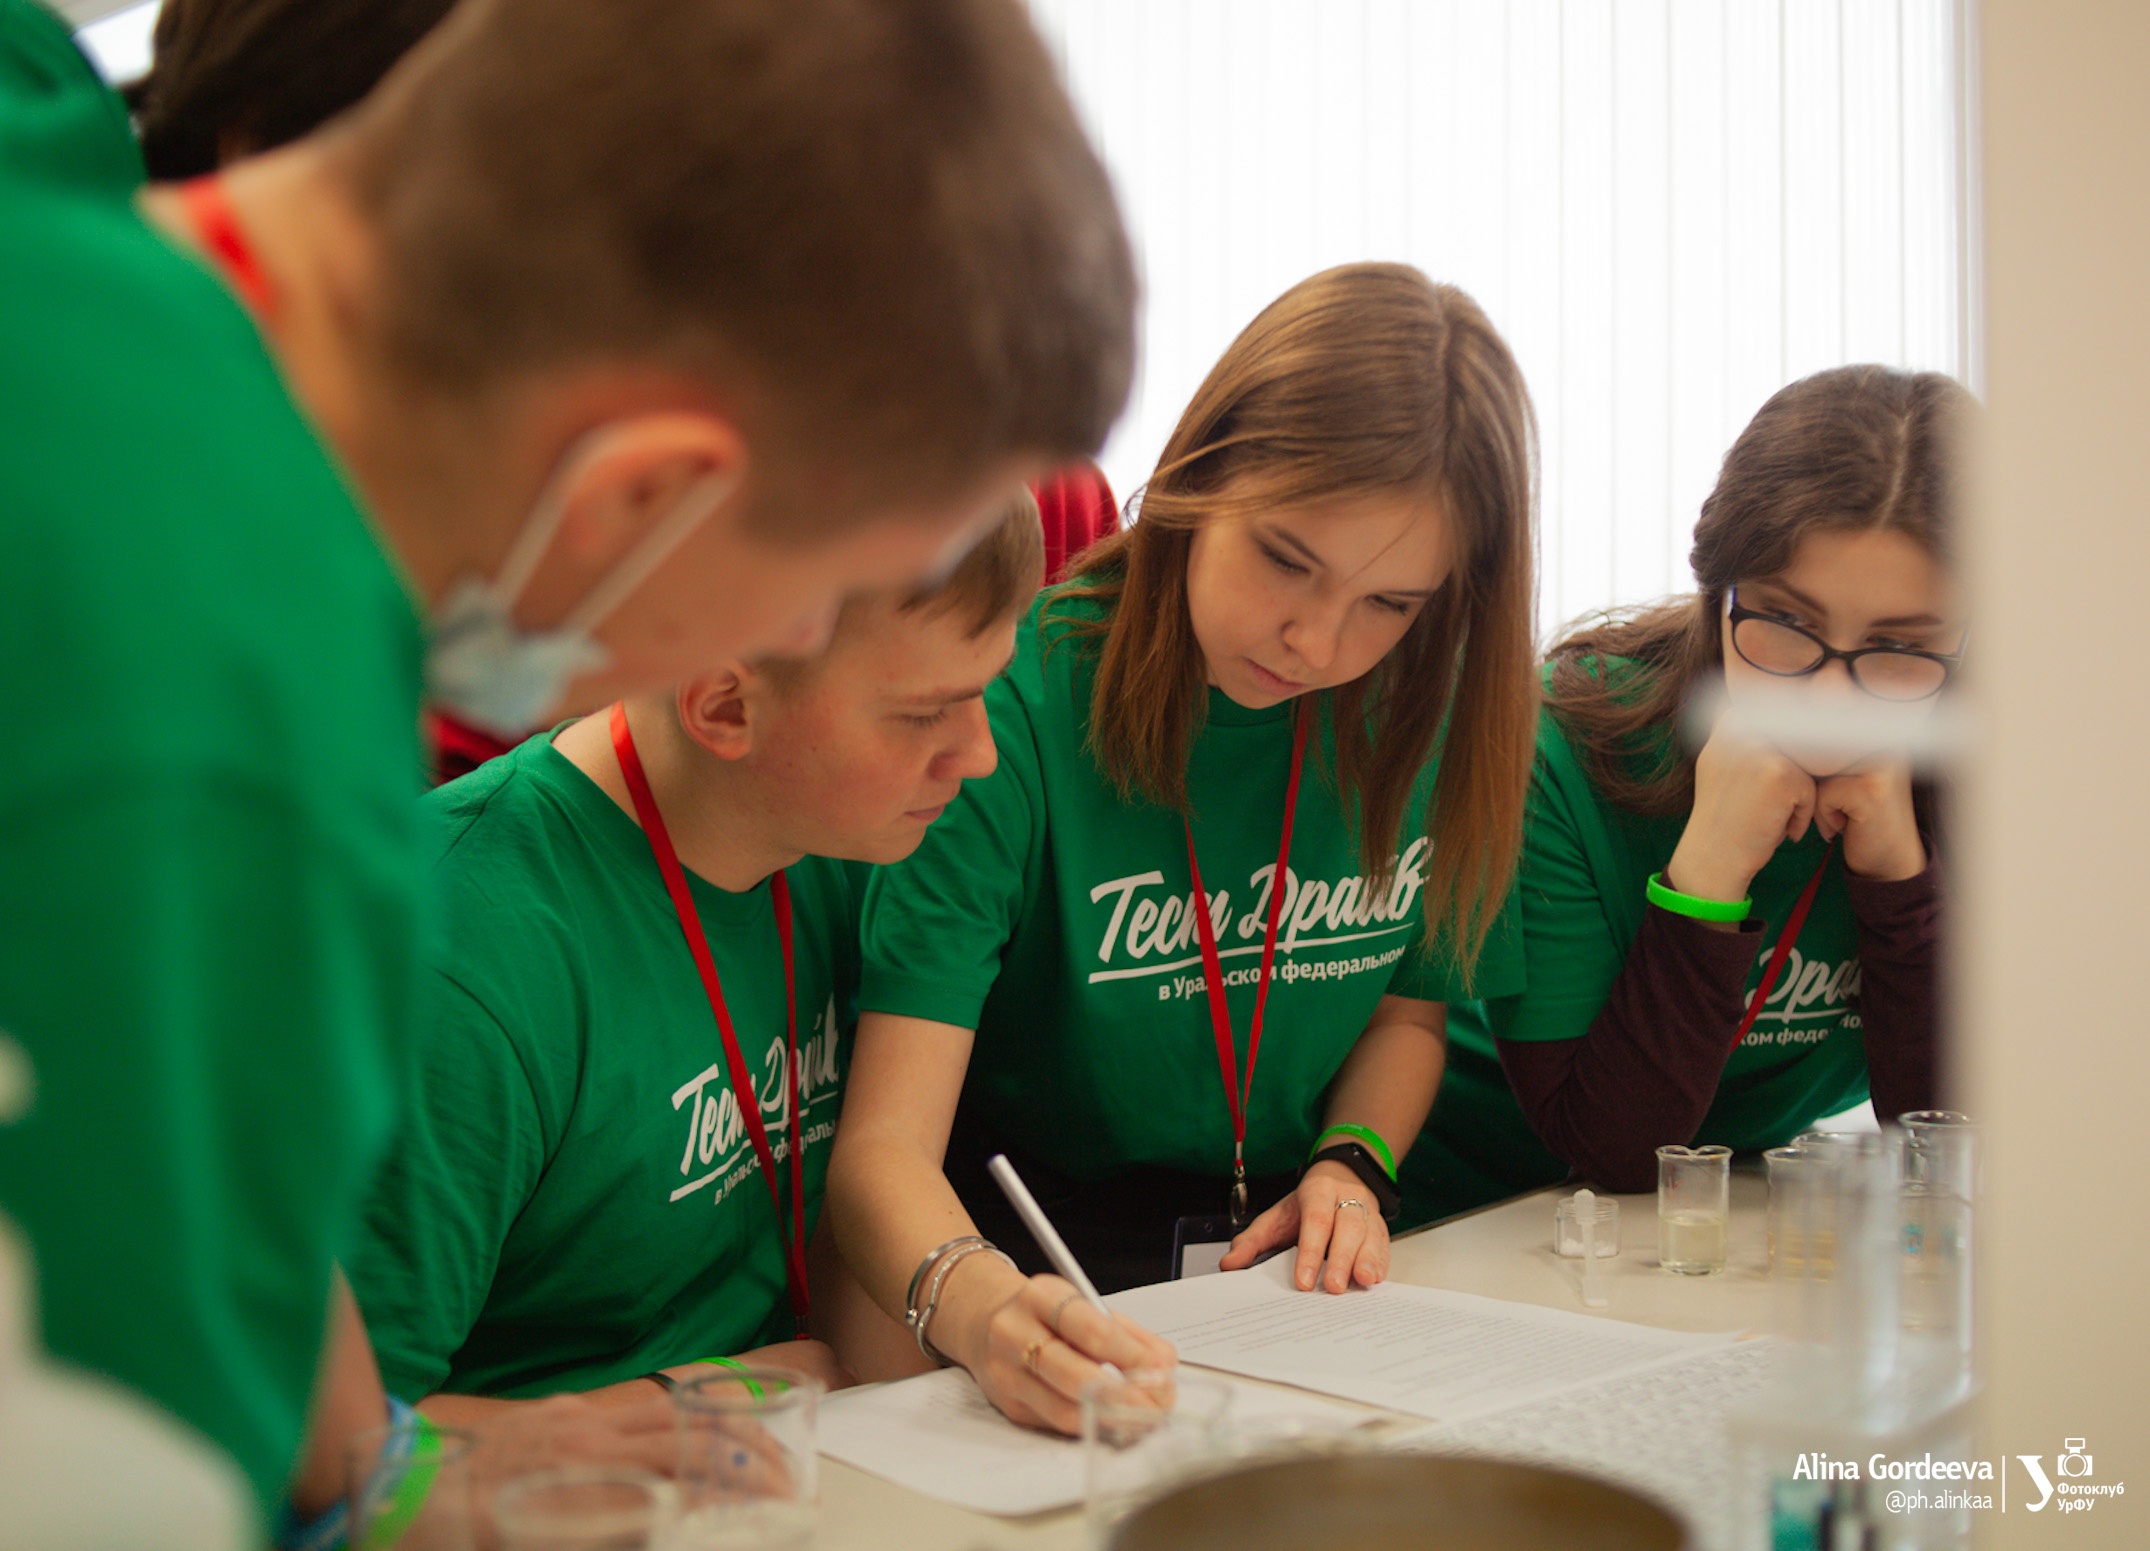 УрФУ приглашает школьников погрузиться в студенческую жизнь на проекте «Тест-драйв в Уральском федеральном» - фото 1